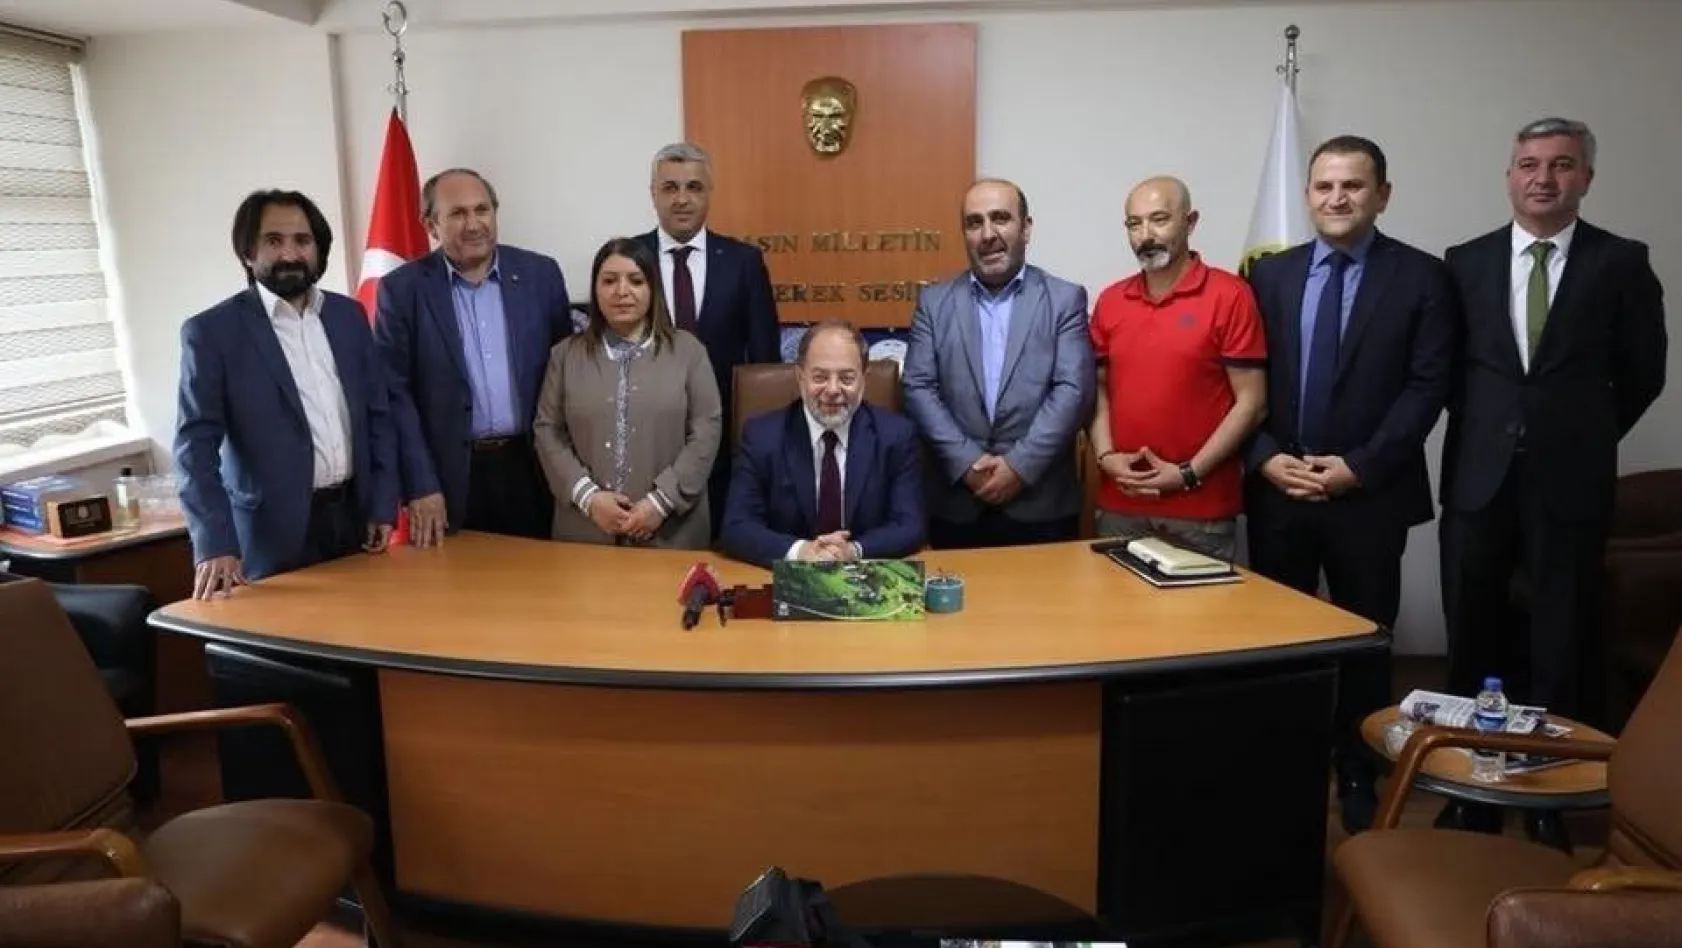 Başbakan Yardımcısı Akdağ'dan DAGC'ye ziyaret
